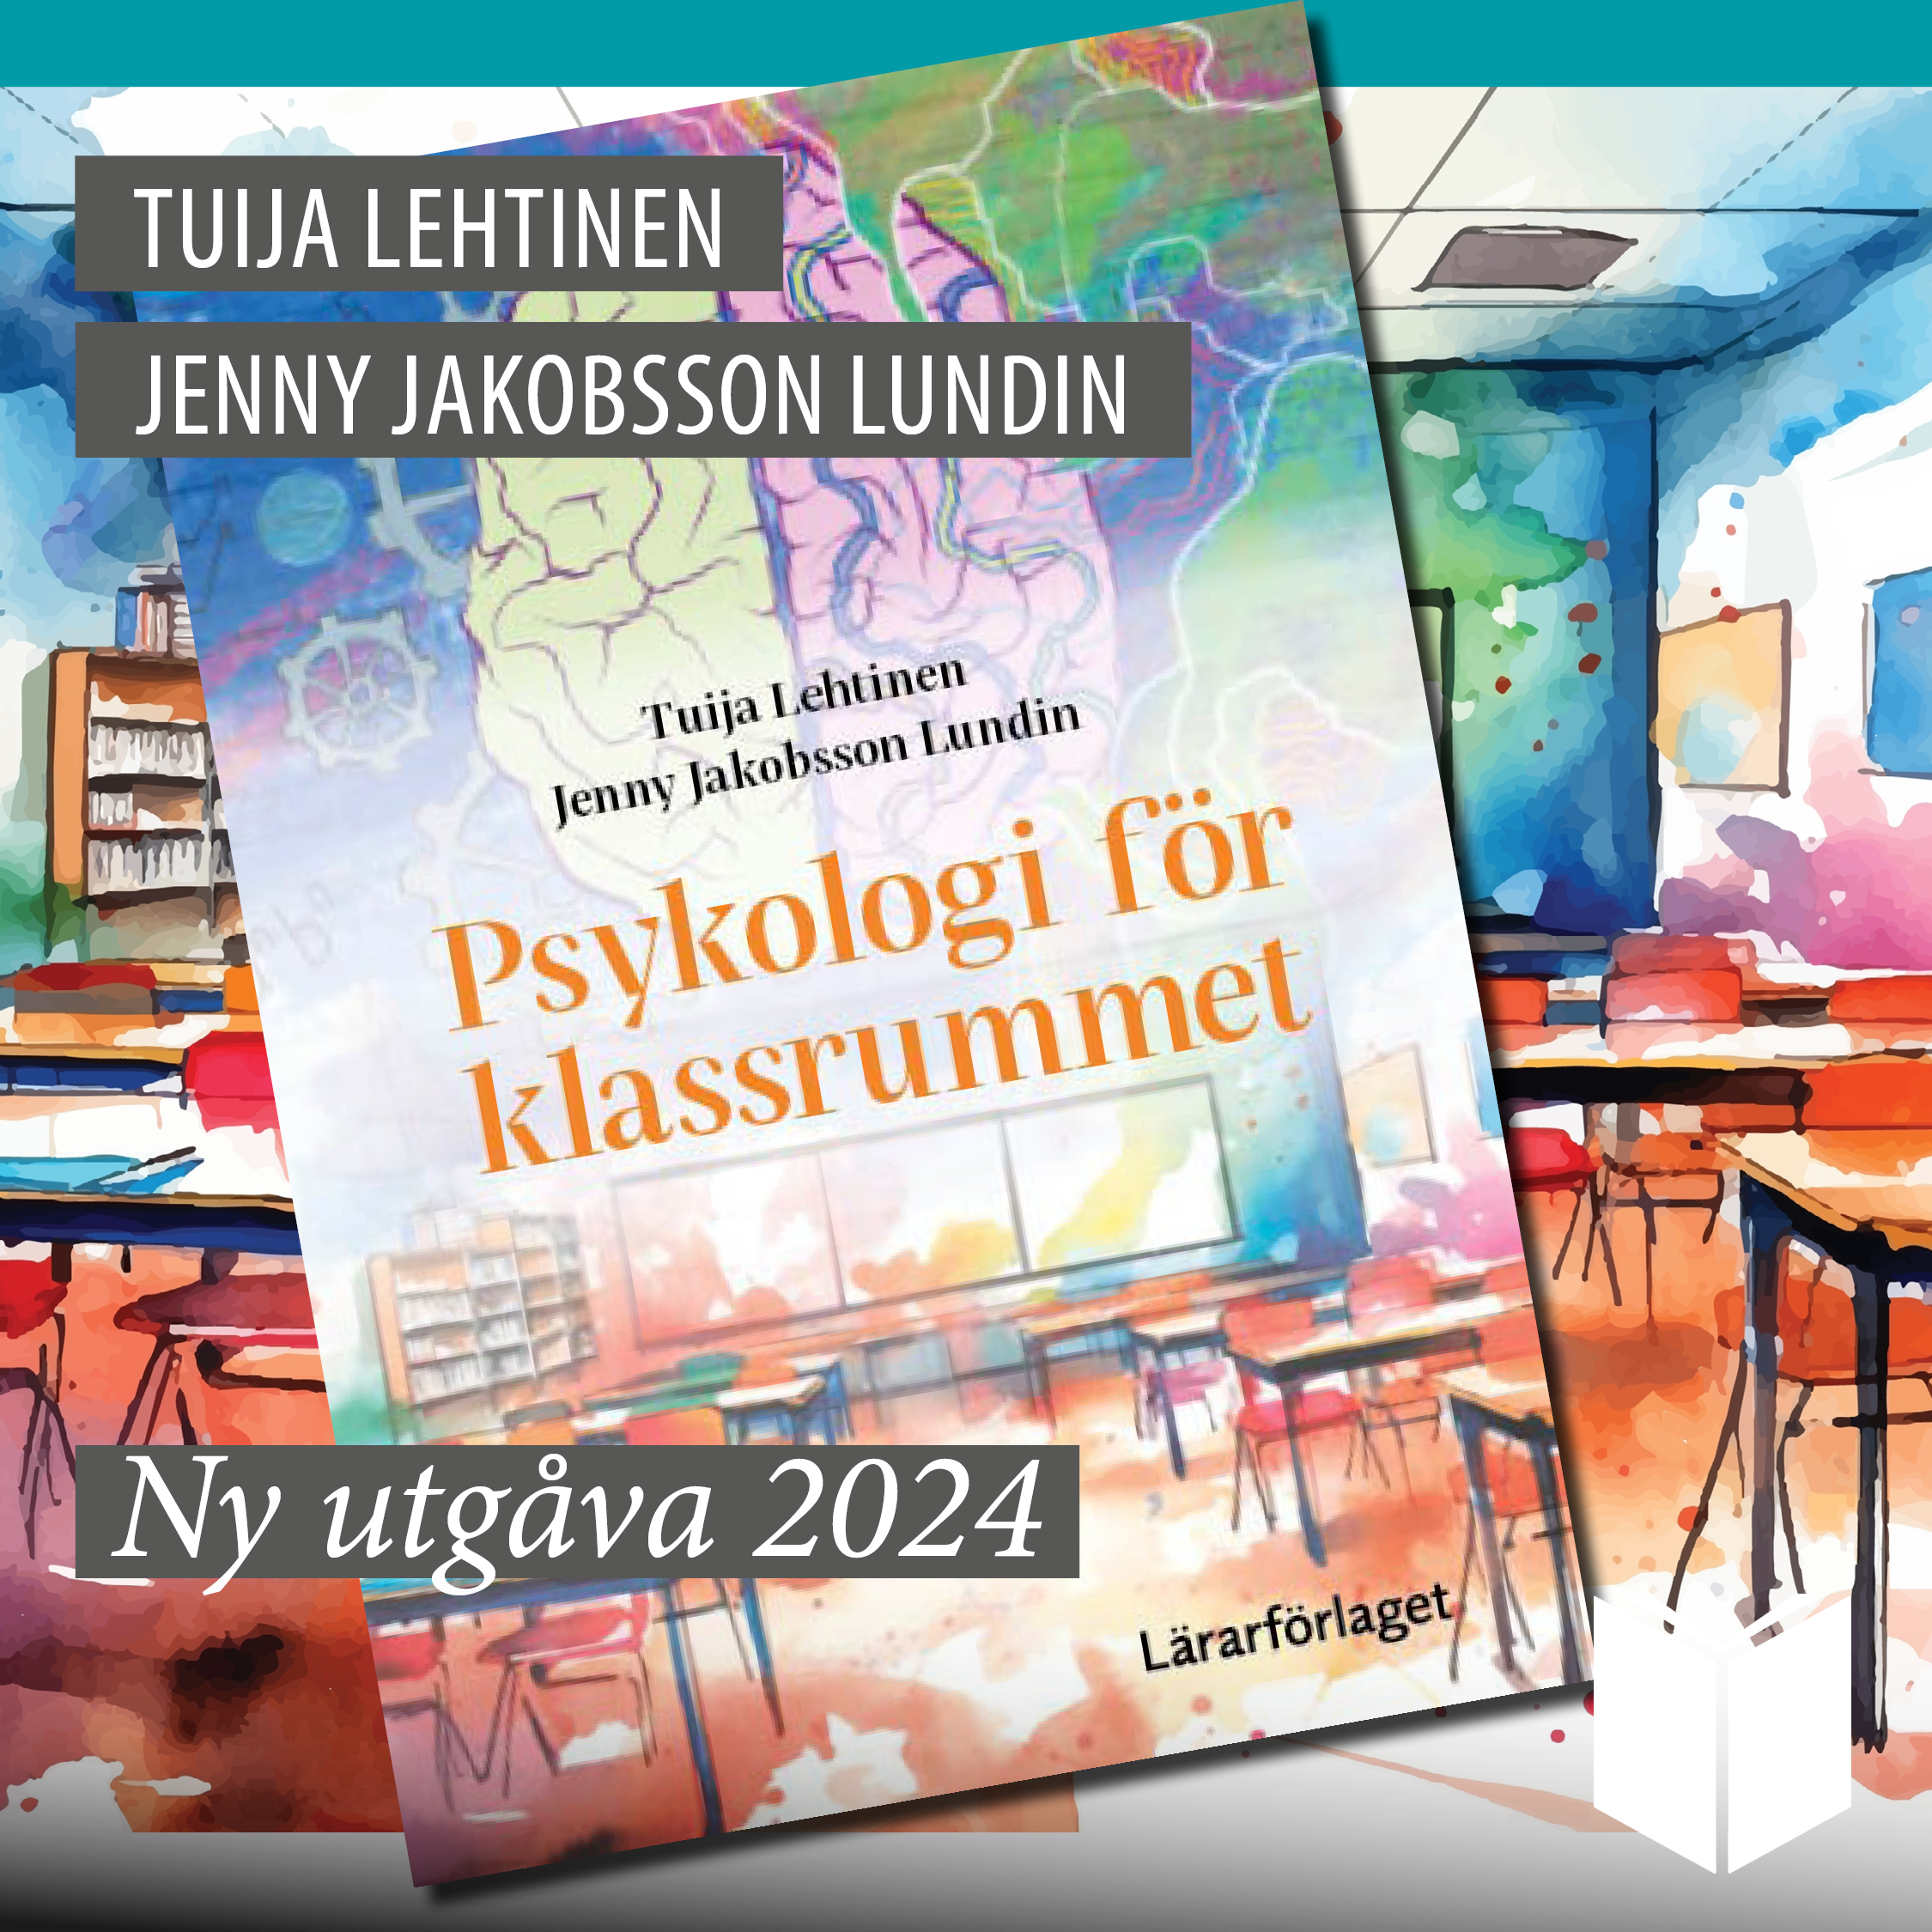 Psykologi för klassrummet av Tuija Lehtinen och Jenny Jakobsson Lundin